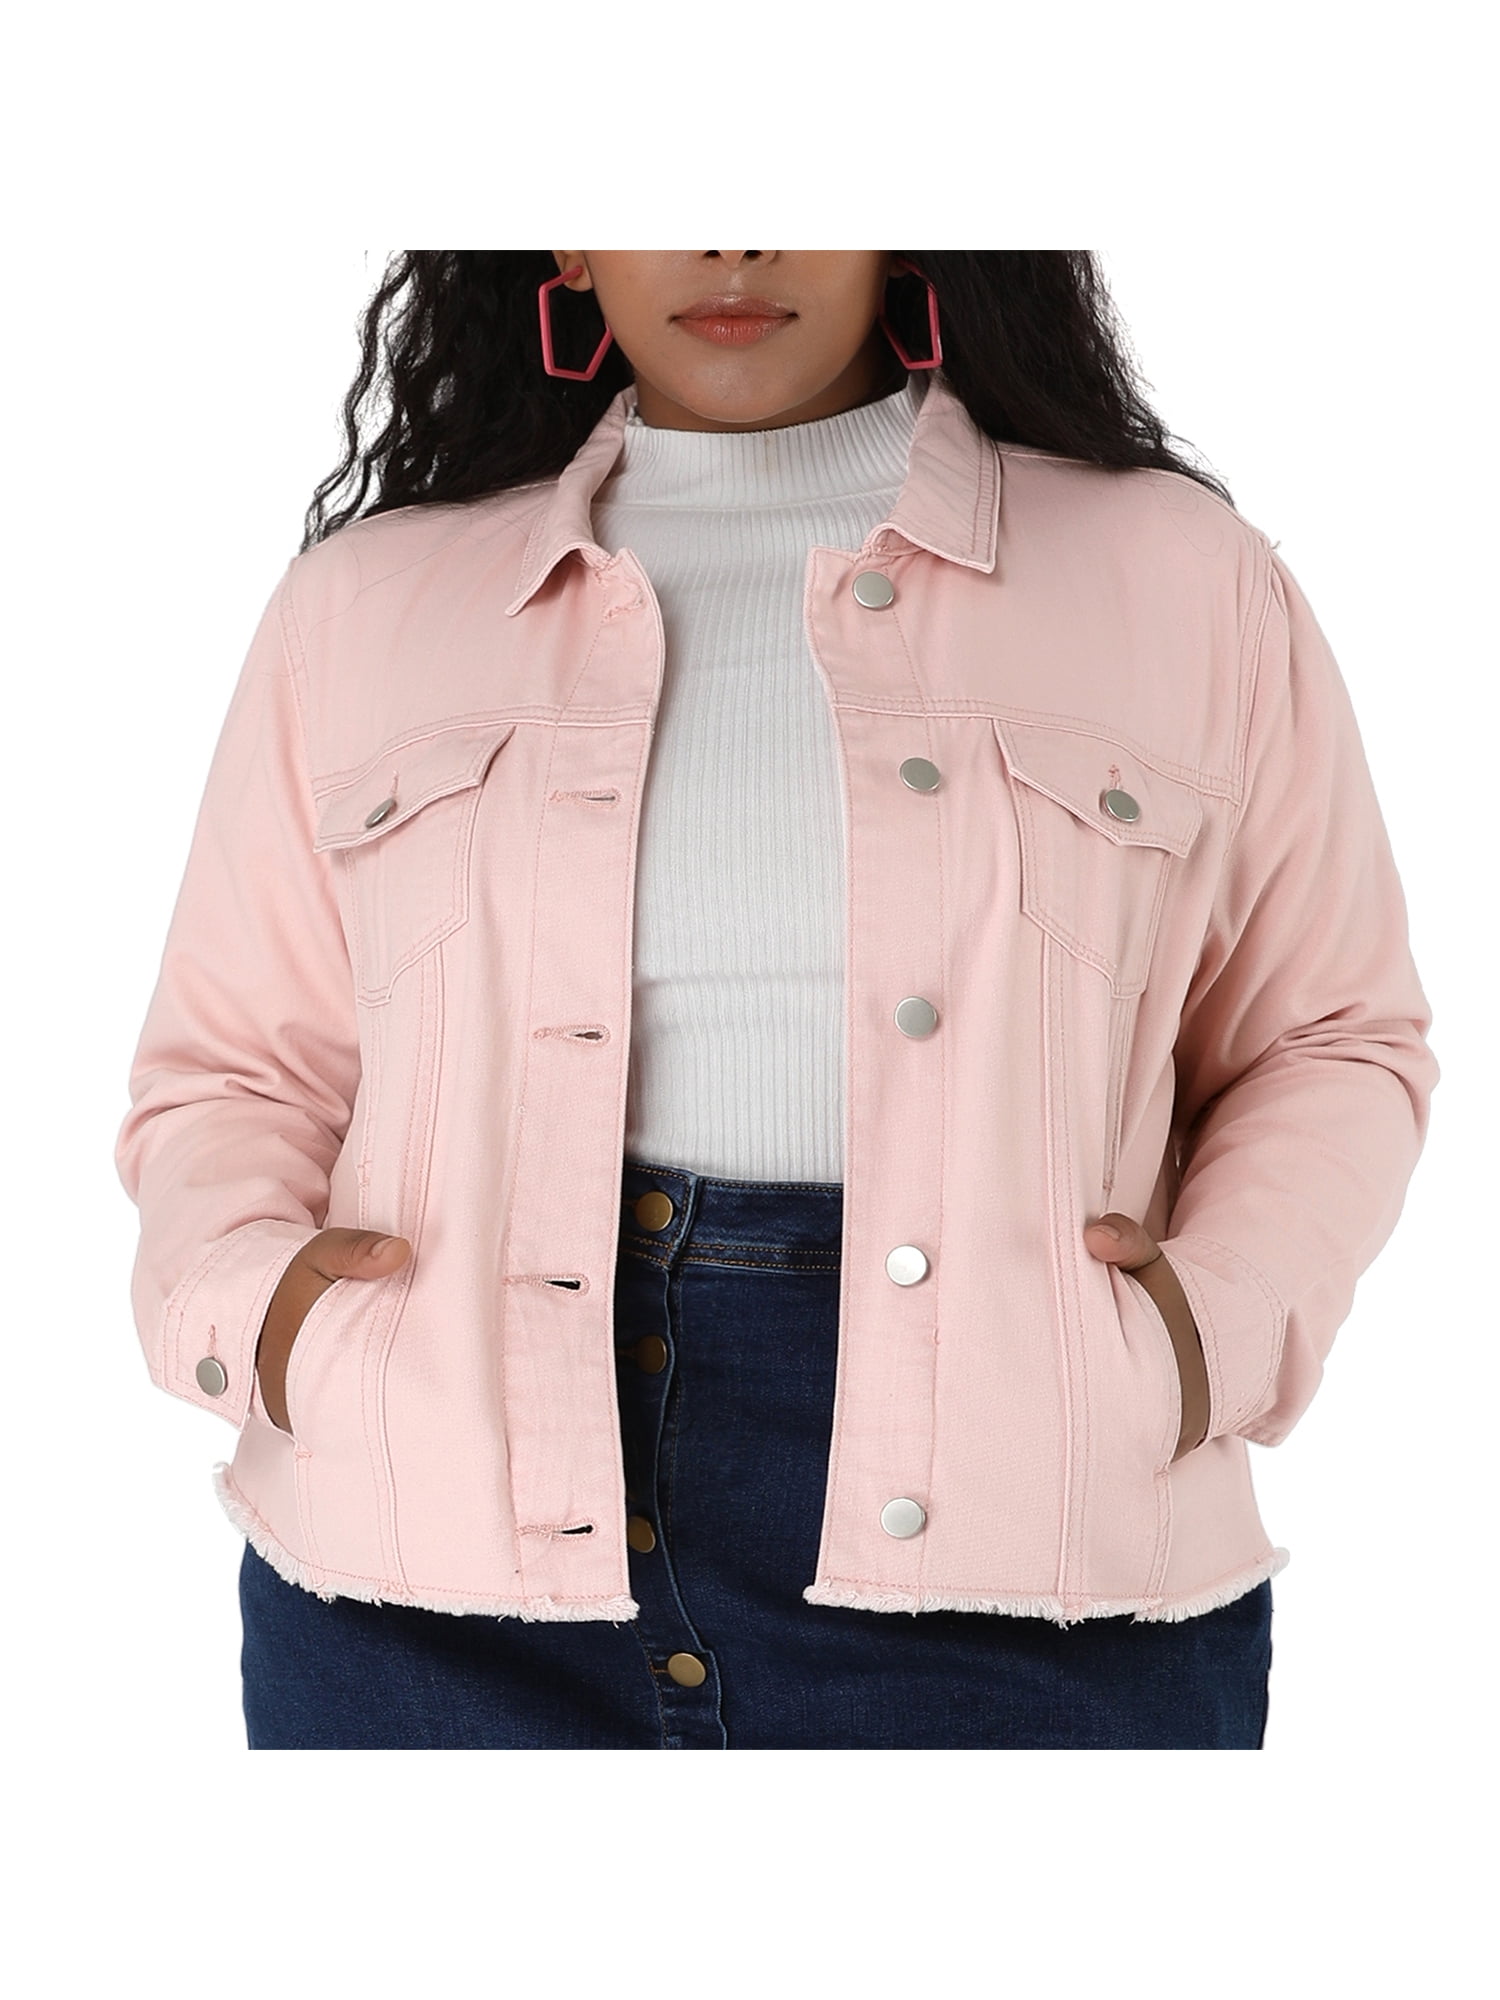 Pink color denim jacket for girls/ Girls pink jacket/ Girls stylish jacket/kids  jacket/ under 299